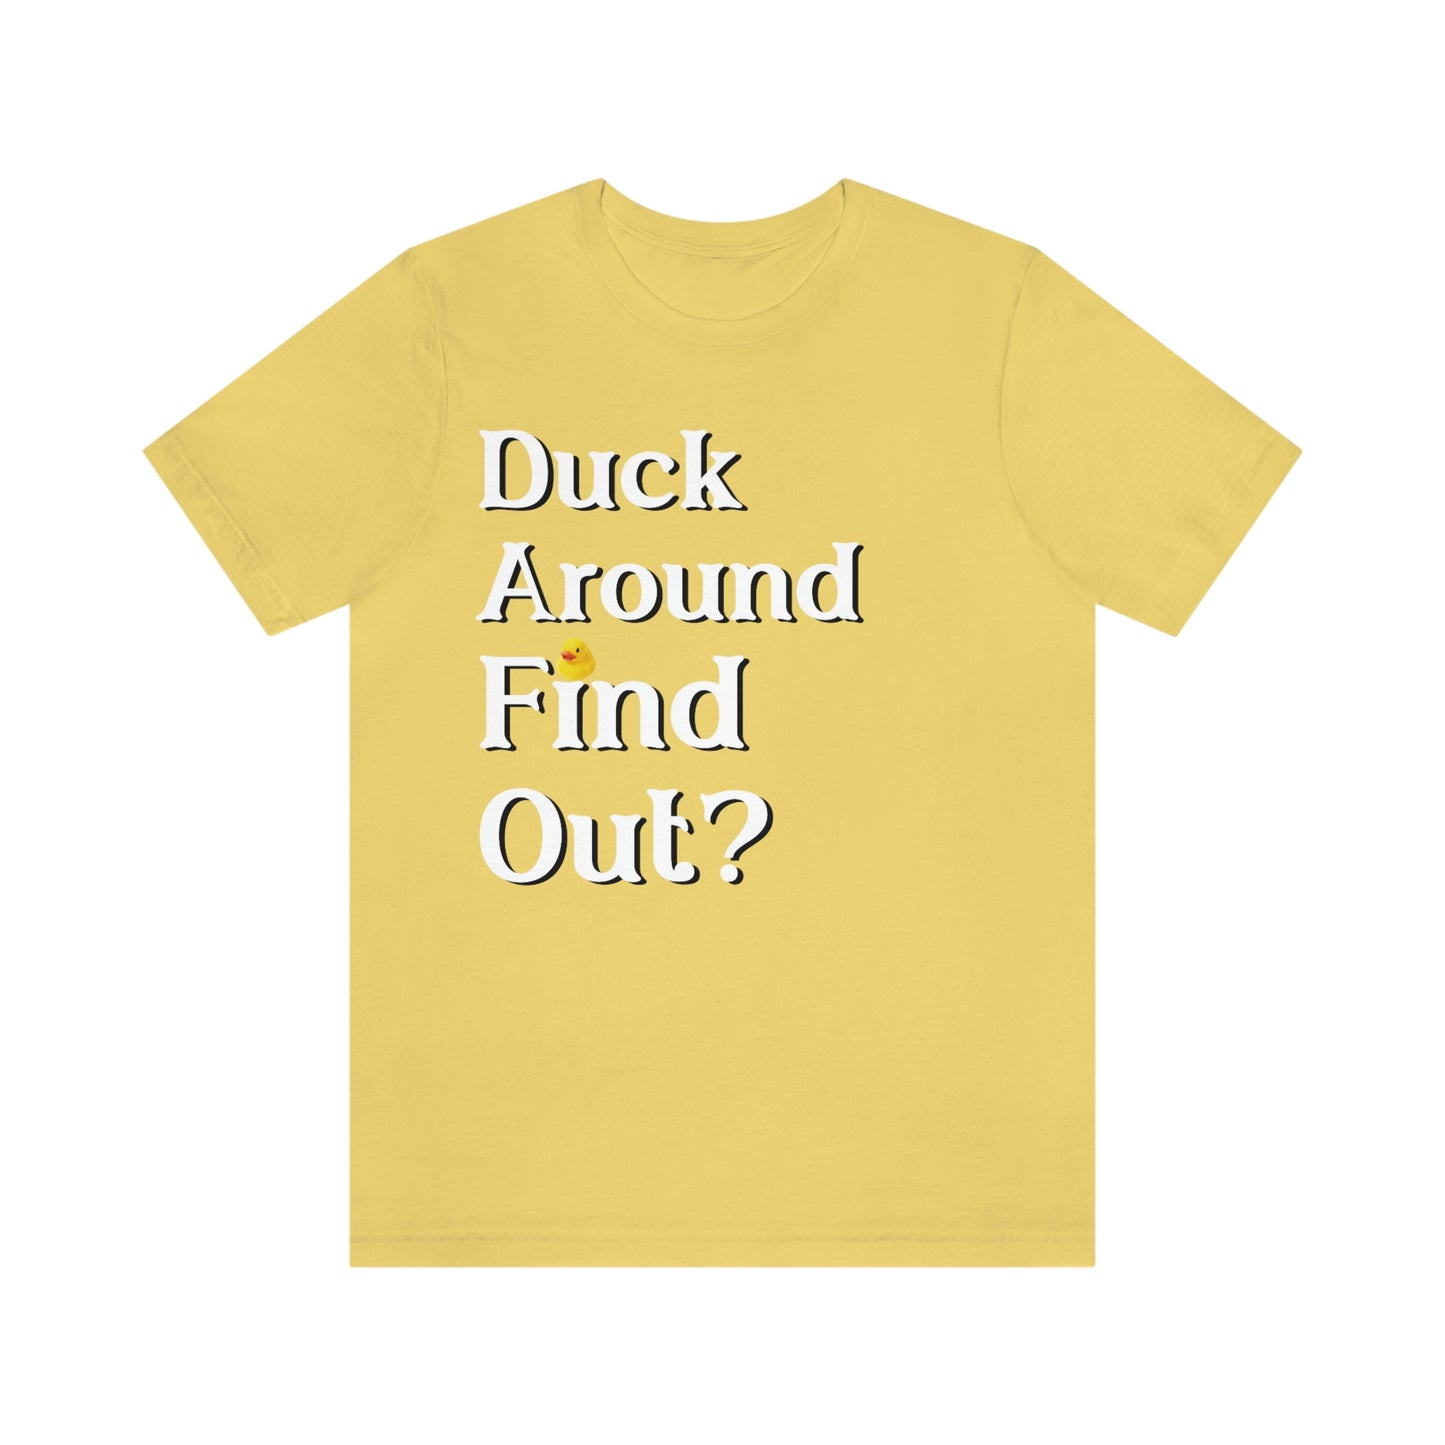 Duck Around Find Out? 2.0